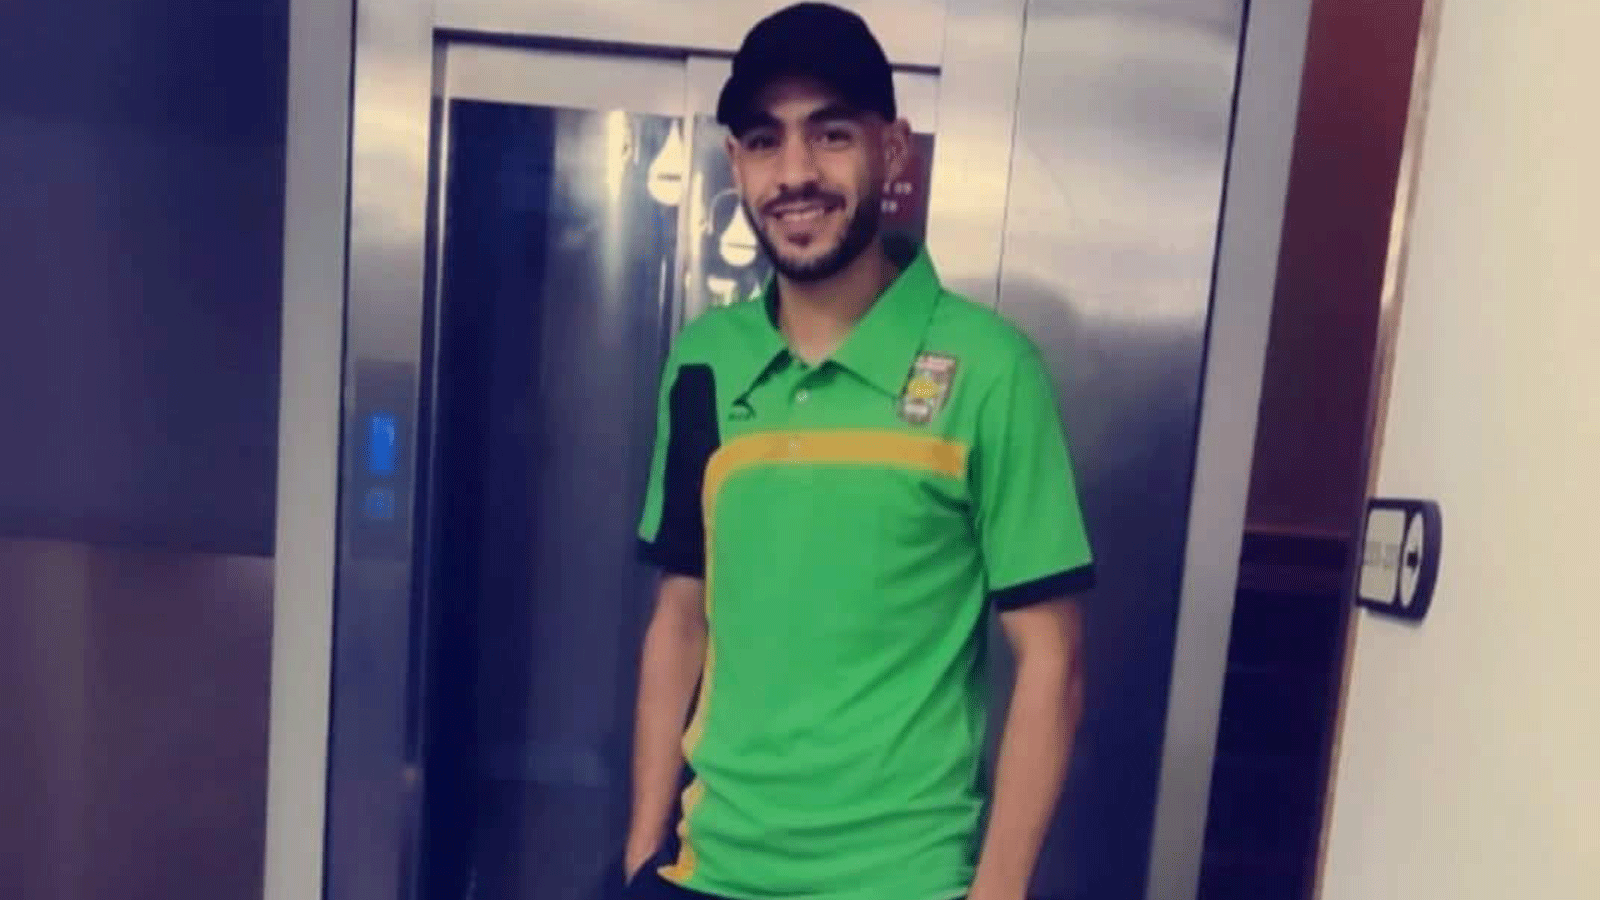 صورة من صفحة نادي مولودية سعيدة على فيسبوك للاعب الجزائري سفيان لوكار الذي توفي عن 30 سنة خلال مباراة في دوري الدرجة الثانية لكرة القدم الجزائرية.